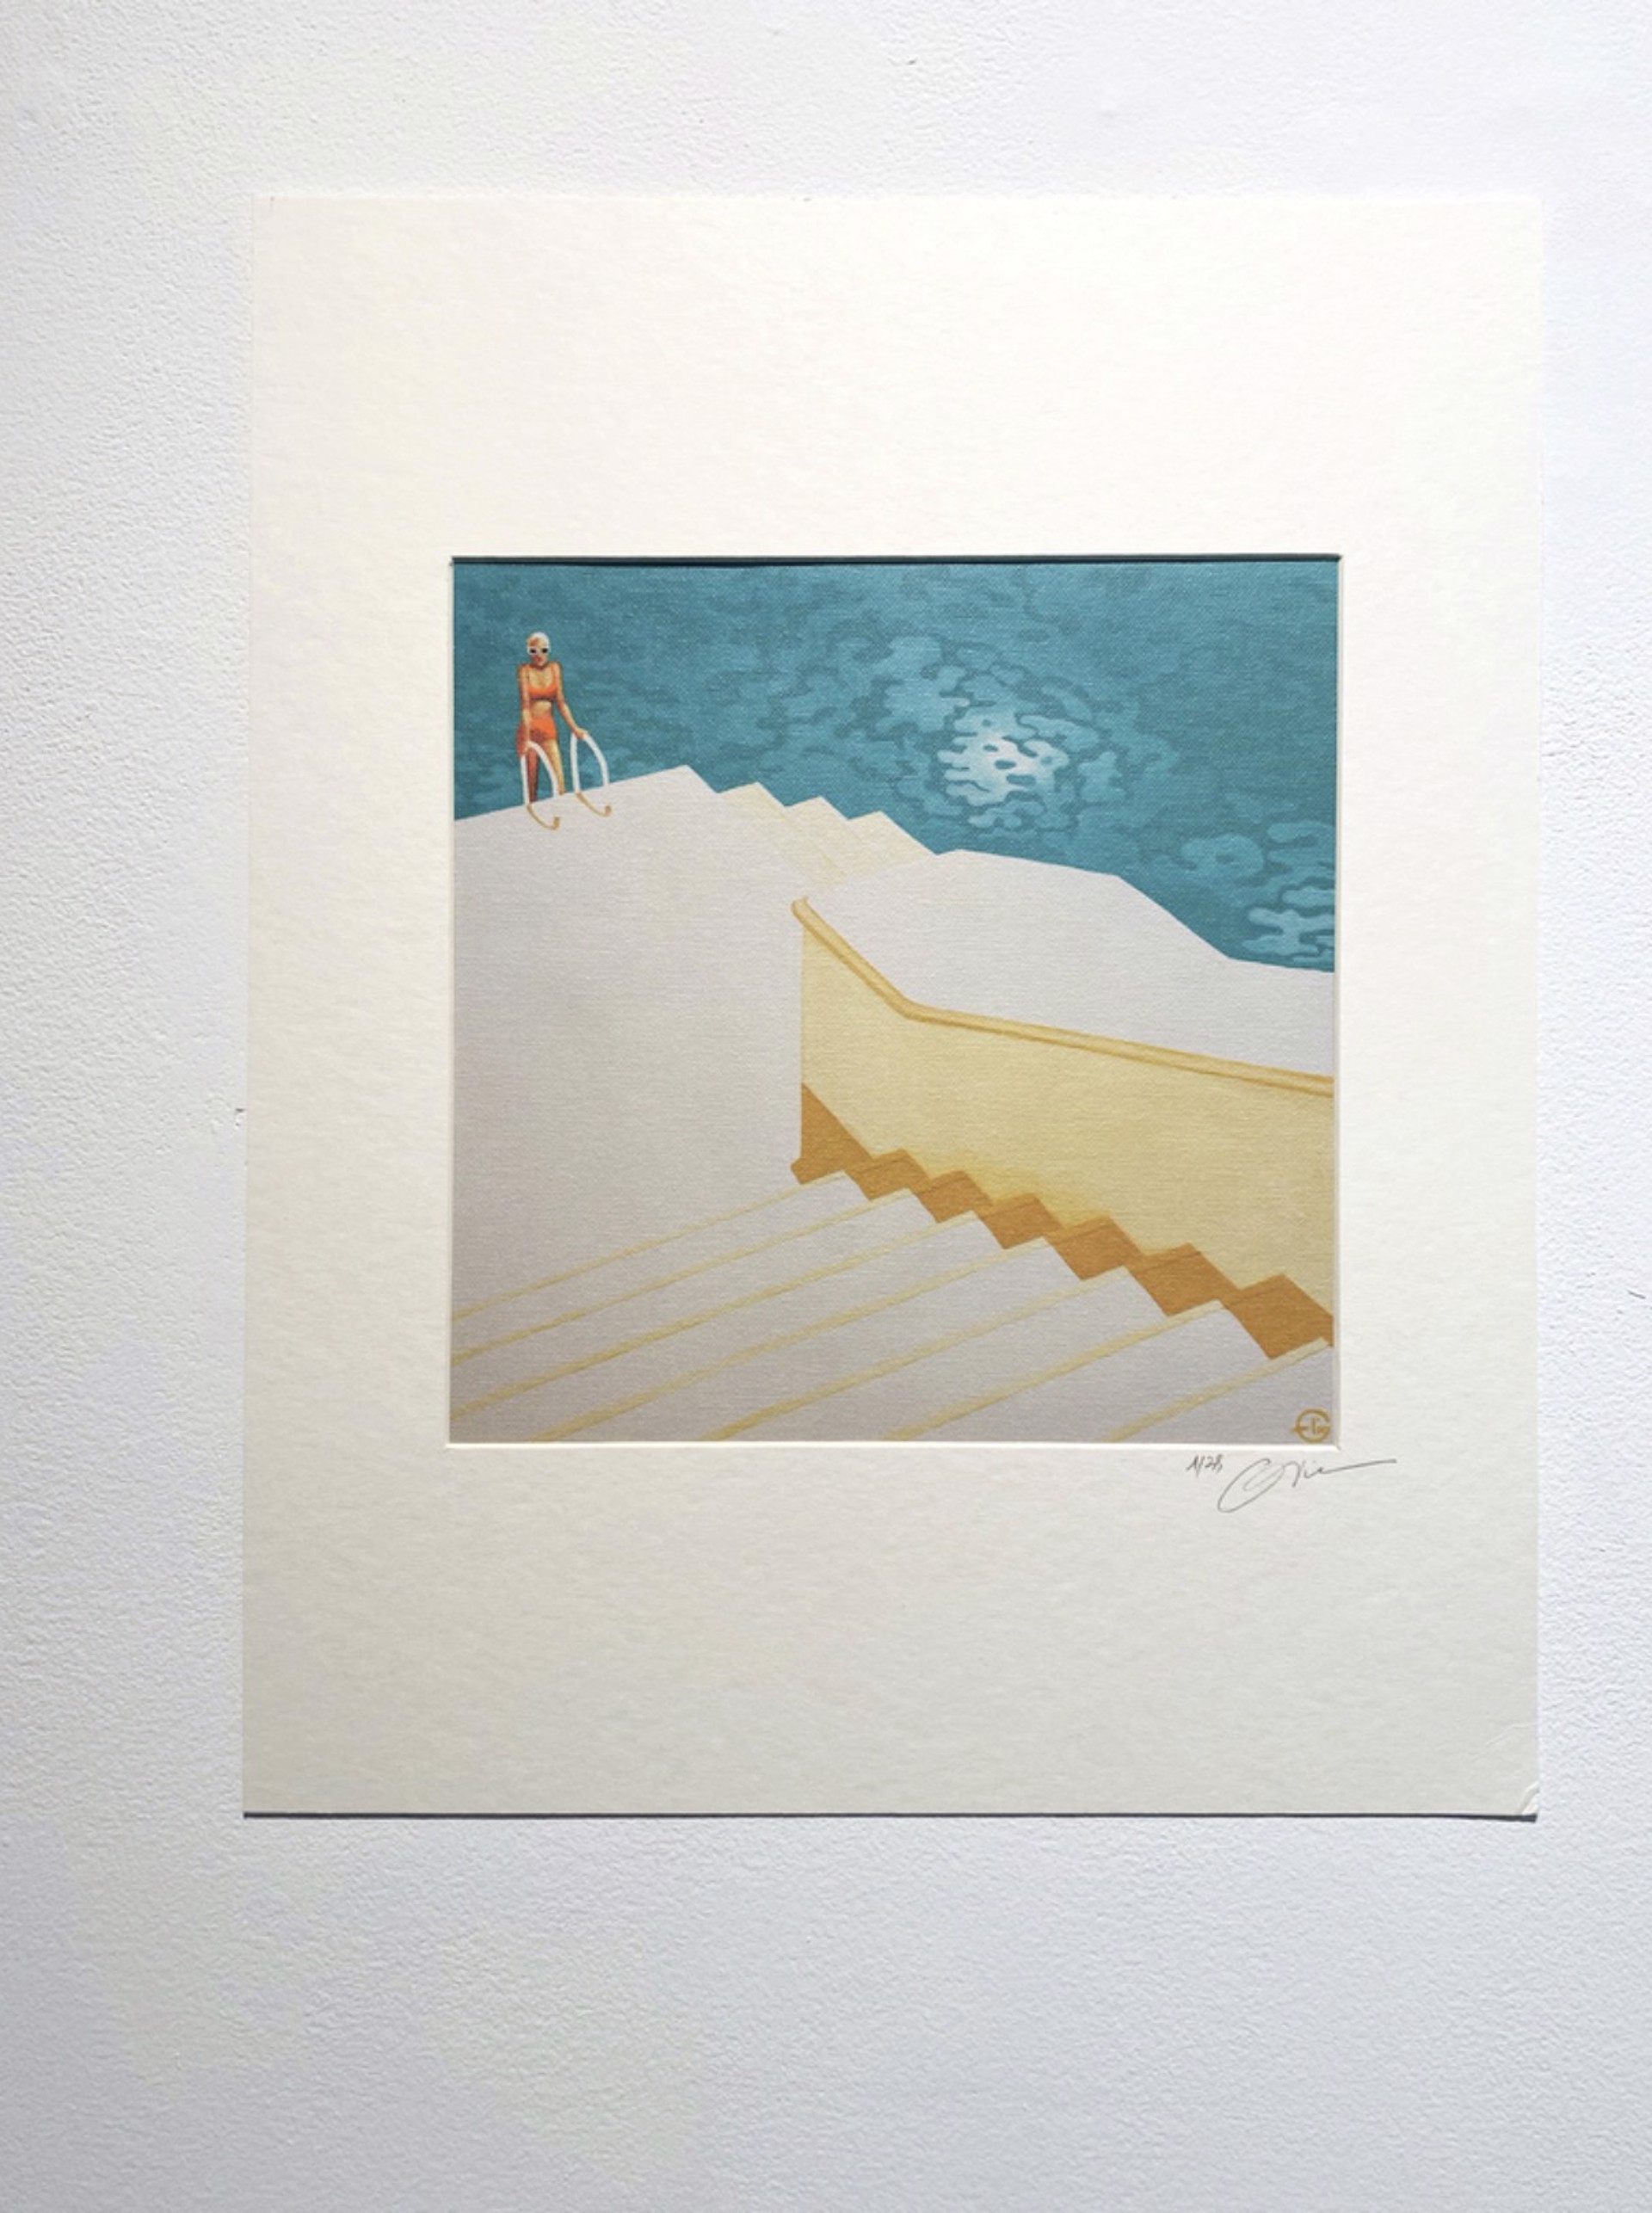 Stairway by Emilie Arnoux